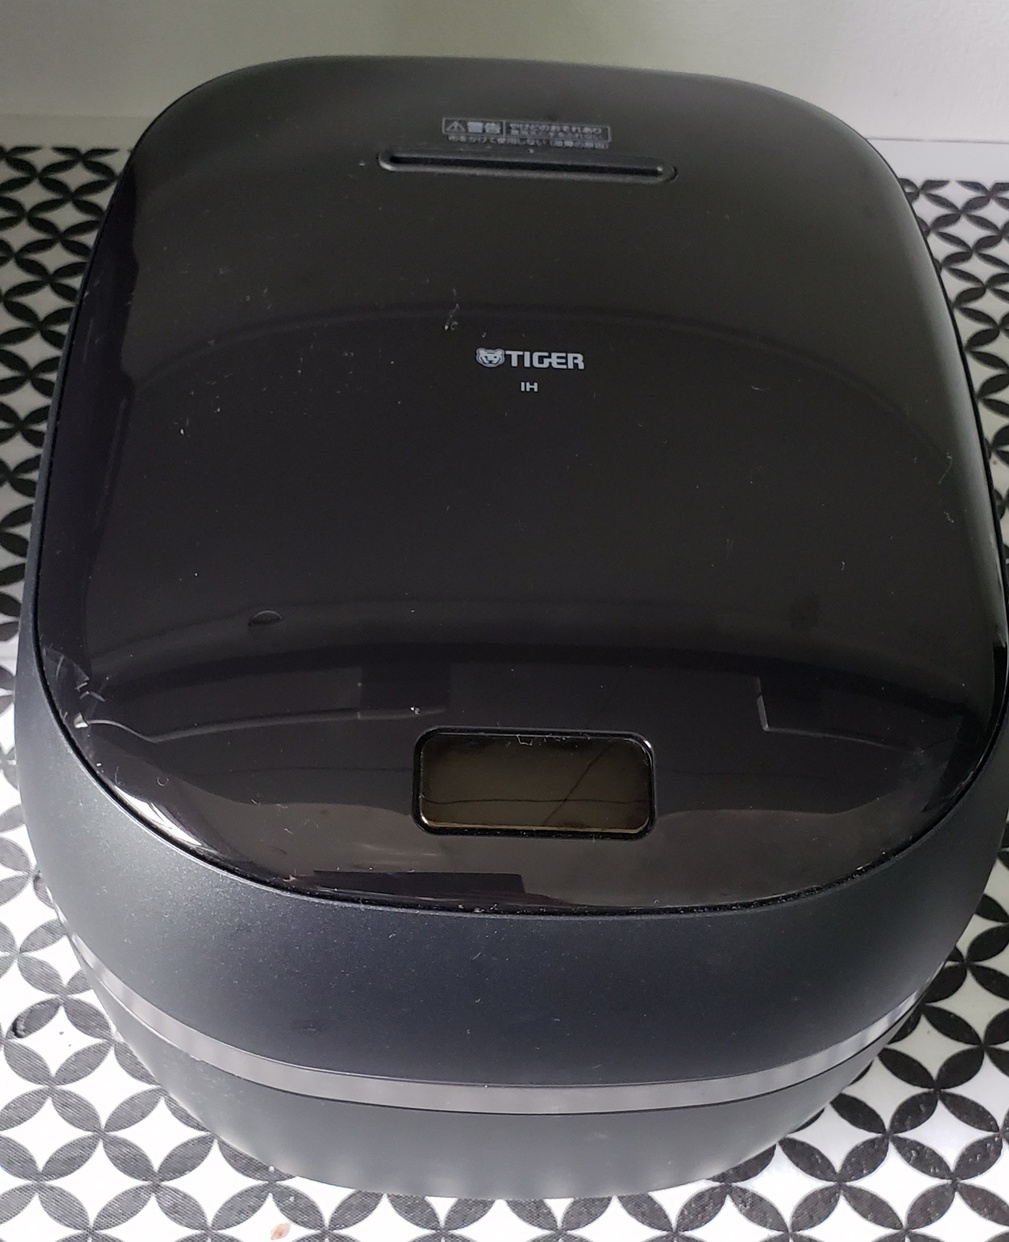 タイガー魔法瓶(TIGER)土鍋圧力IHジャー炊飯器 JPG-S100を使ったせあらさんのクチコミ画像1